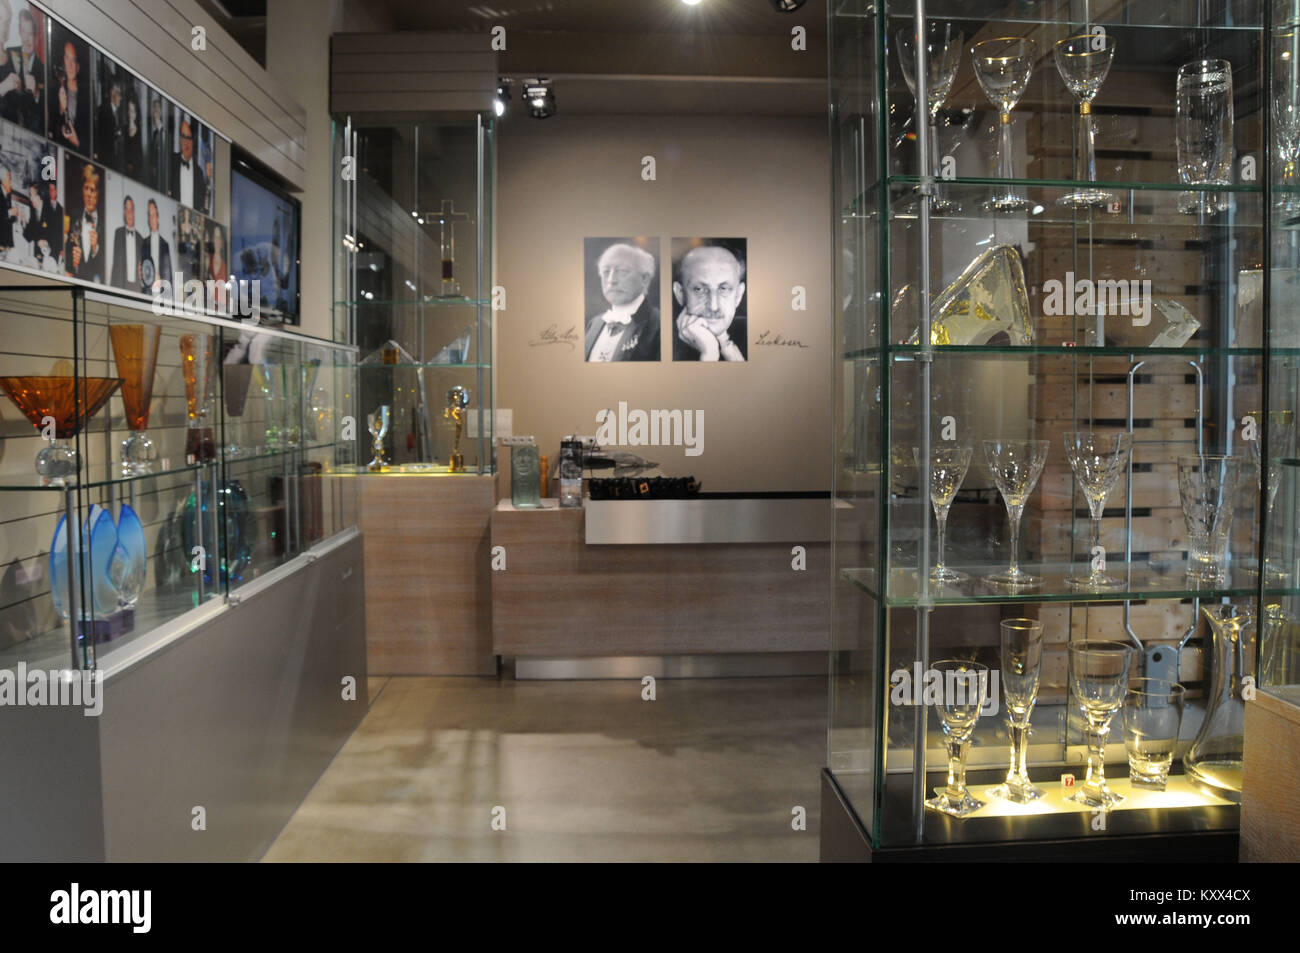 Store, commercio, Moser cristalli, 2014, Karlovy Vary, Repubblica Ceca. Foto Stock